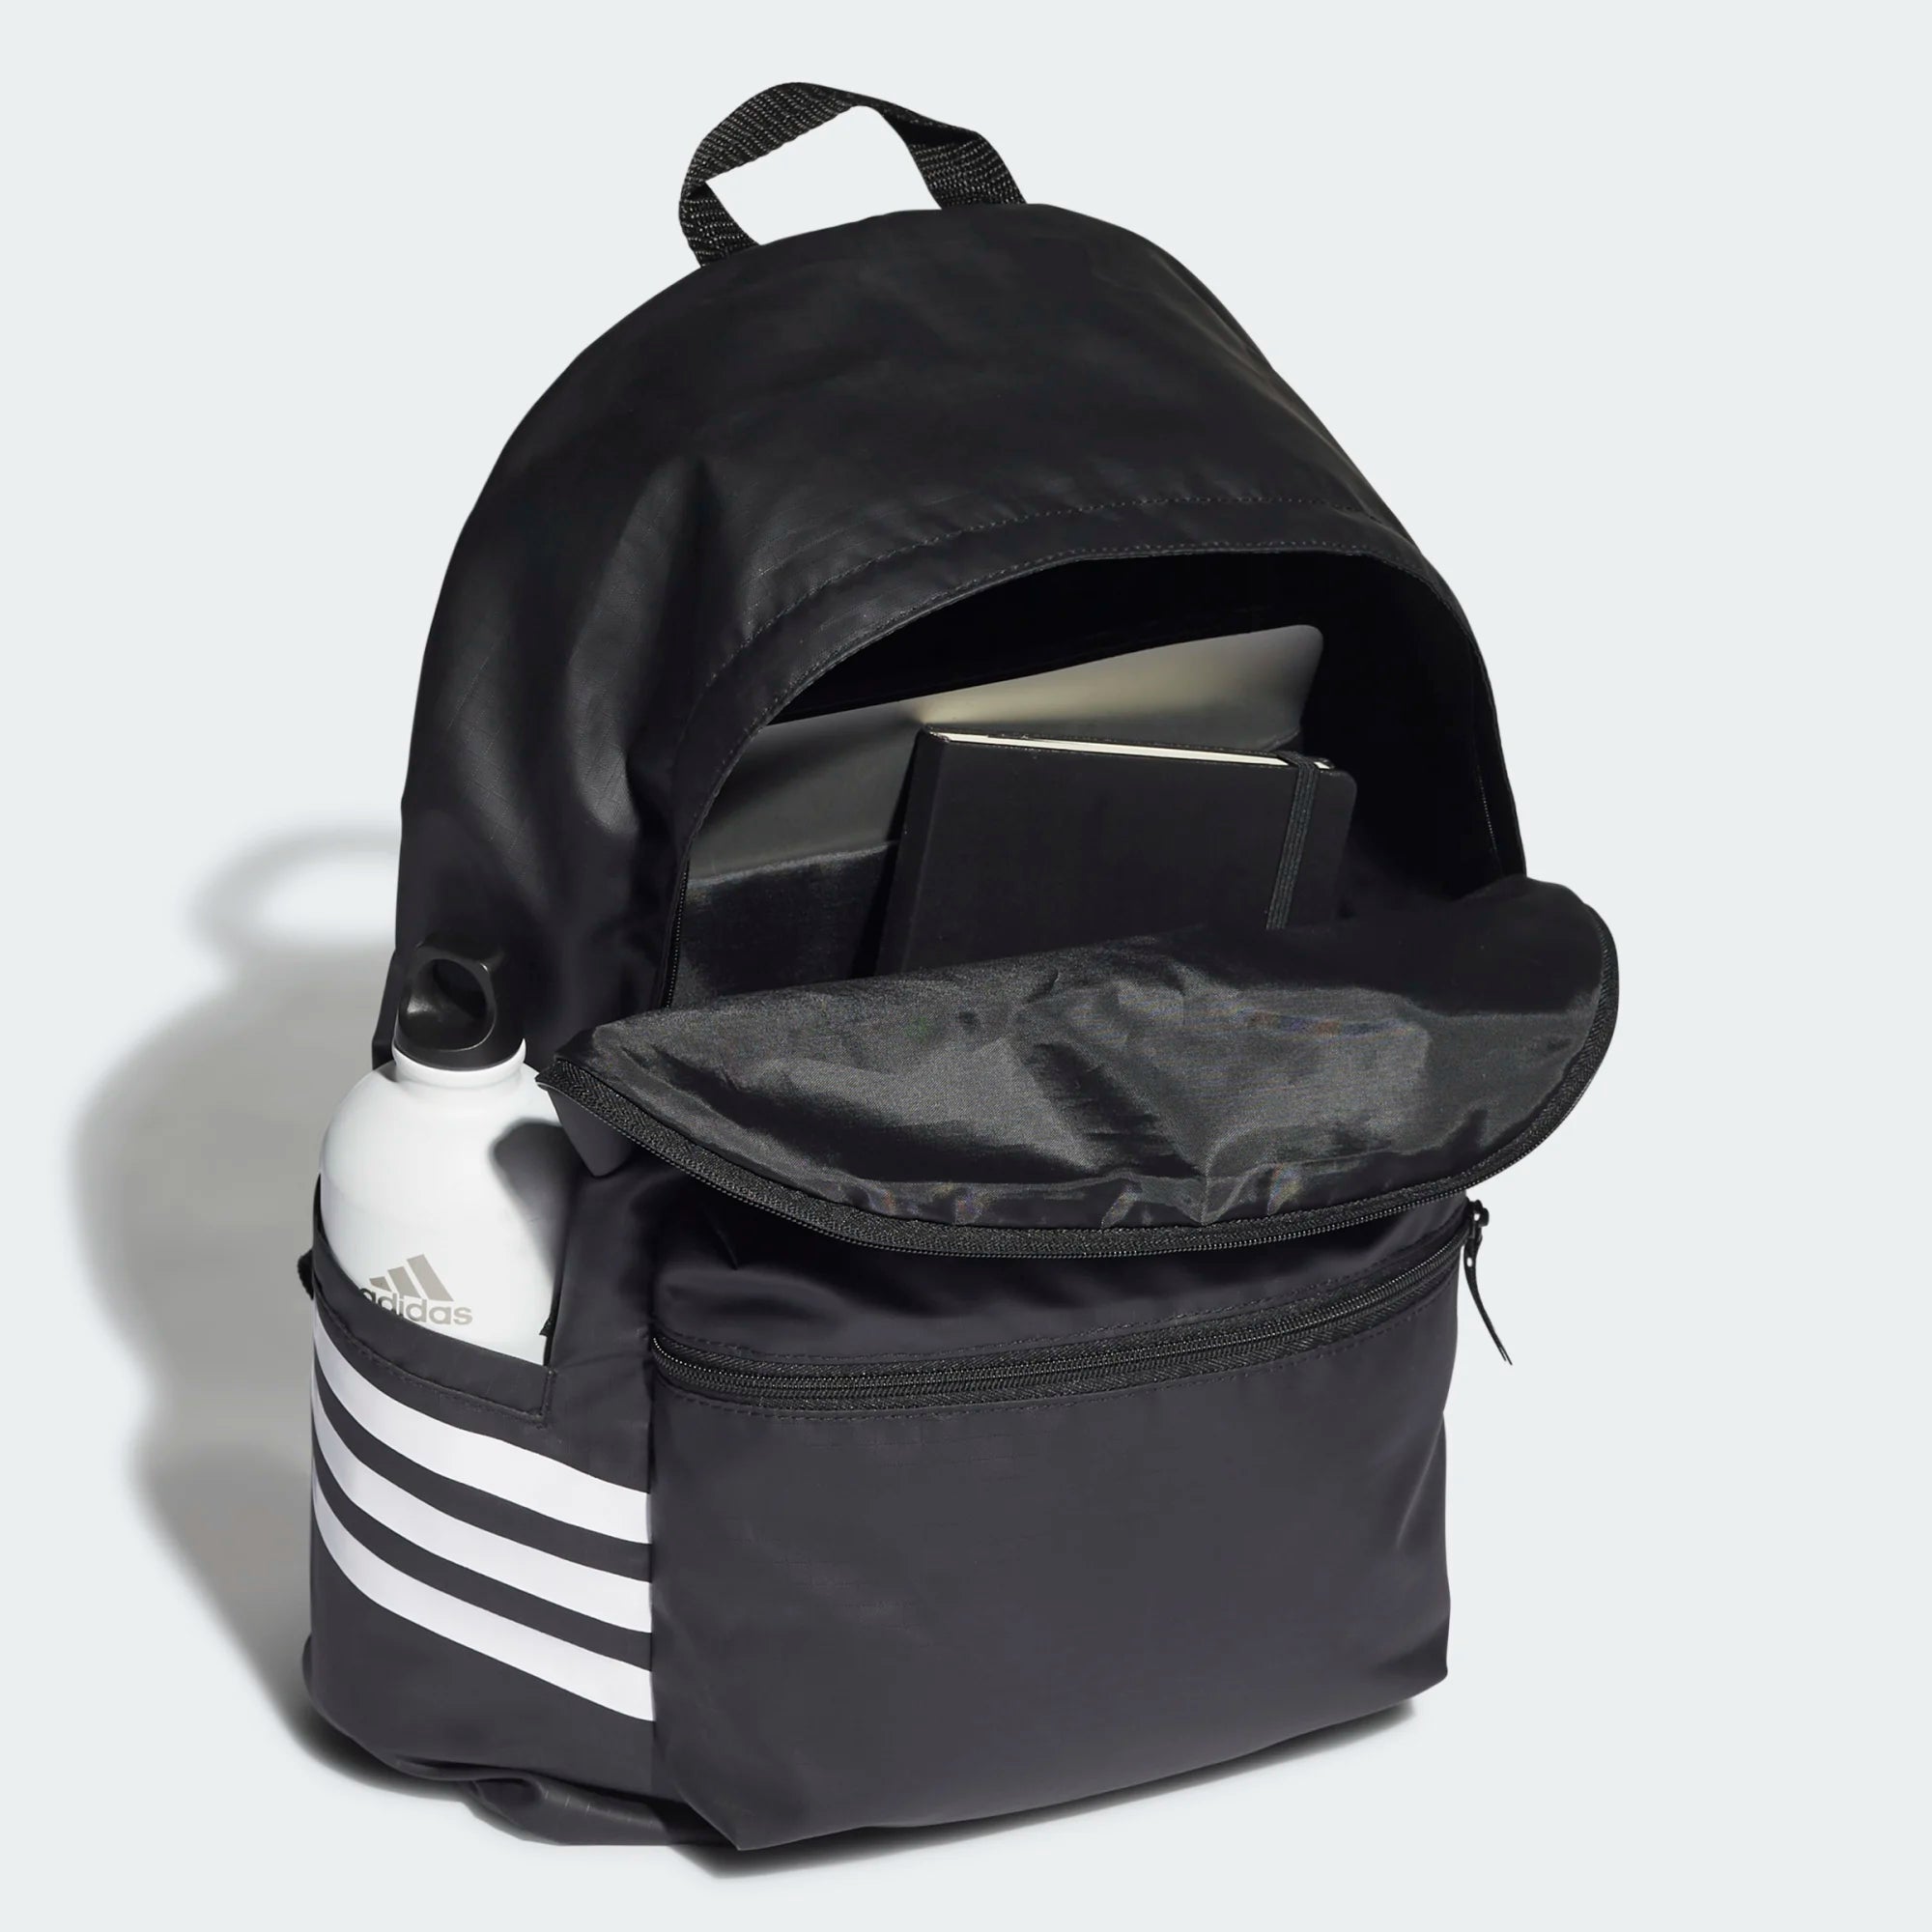 Adidas Backpack - Awesome Adi